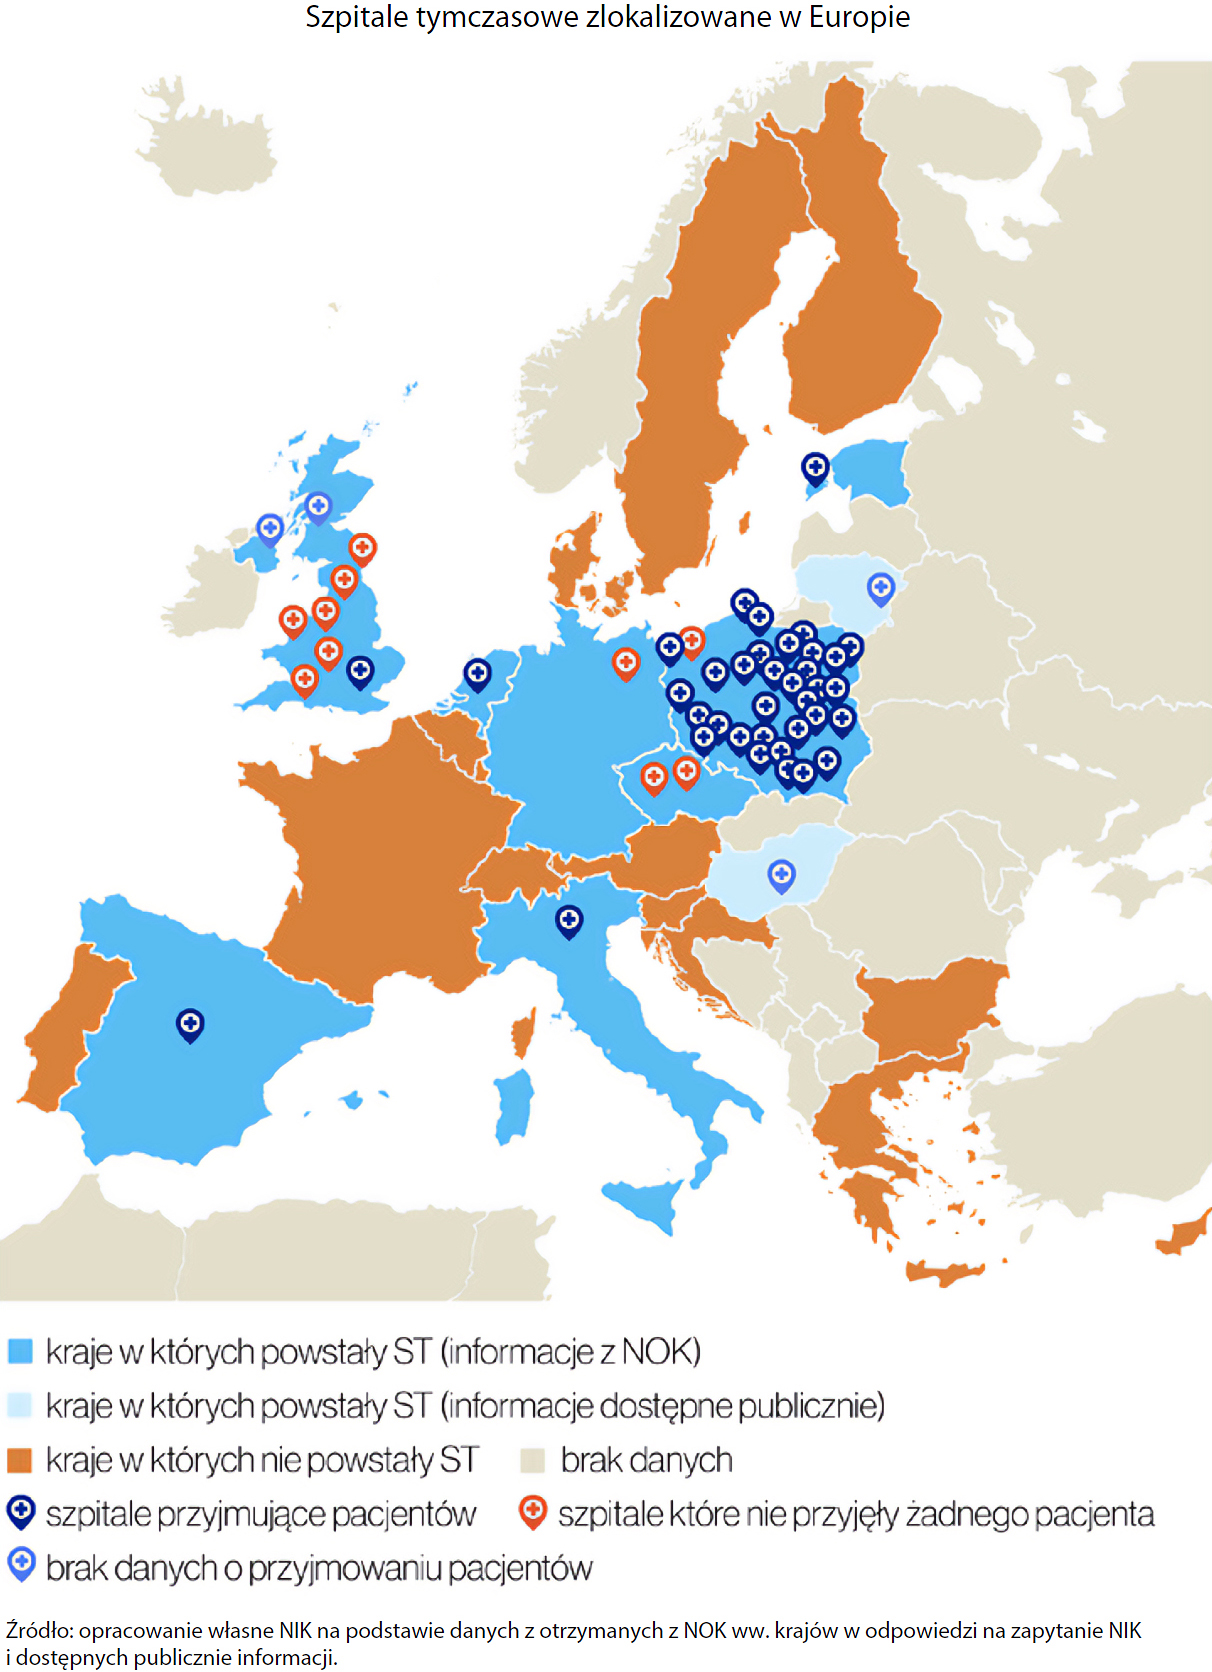 Szpitale tymczasowe zlokalizowane w Europie (opis grafiki poniżej)